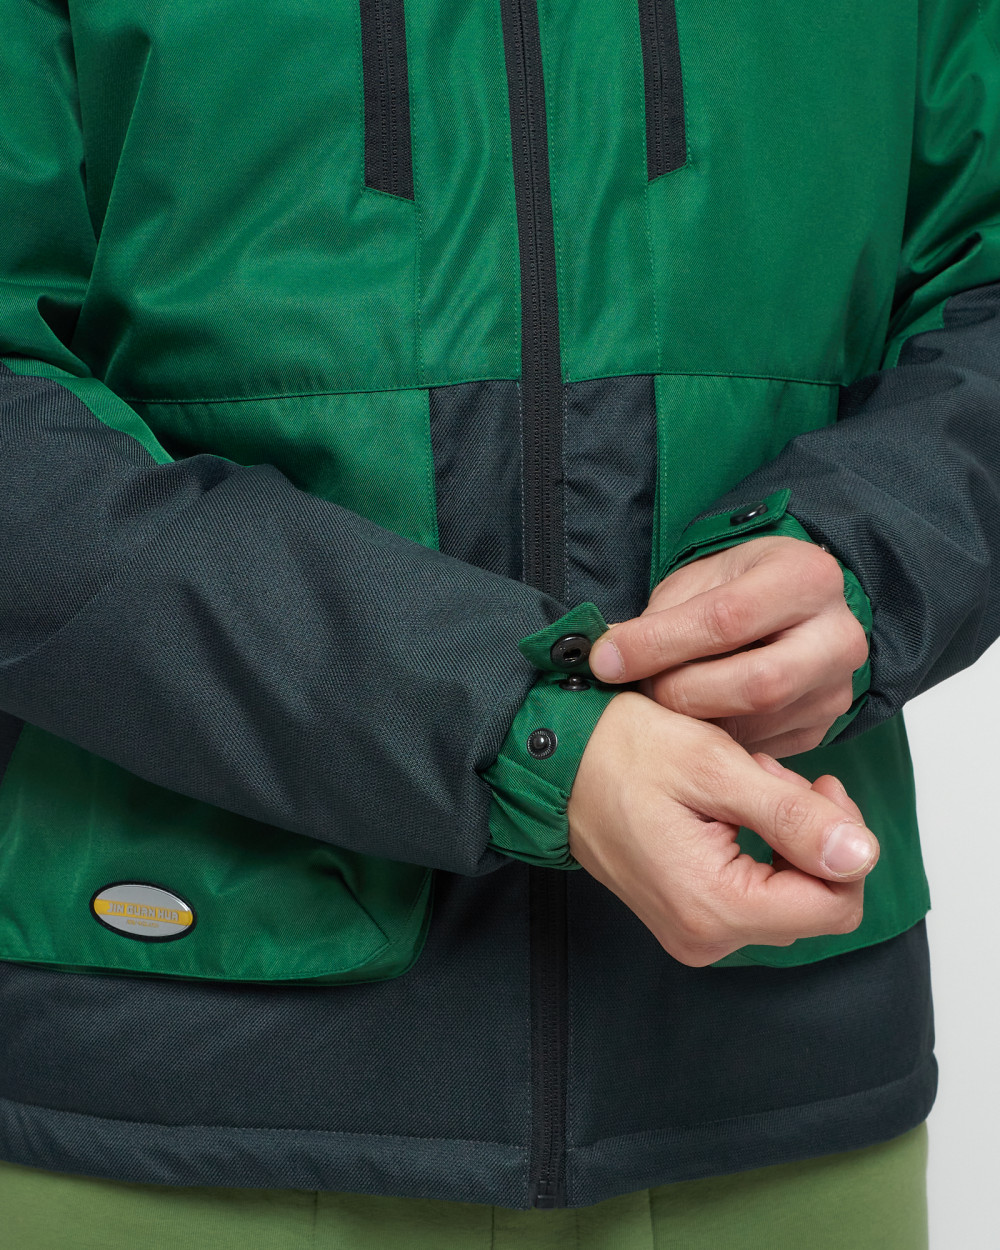 Купить куртку мужскую спортивную весеннюю оптом от производителя недорого в Москве 8815Z 1